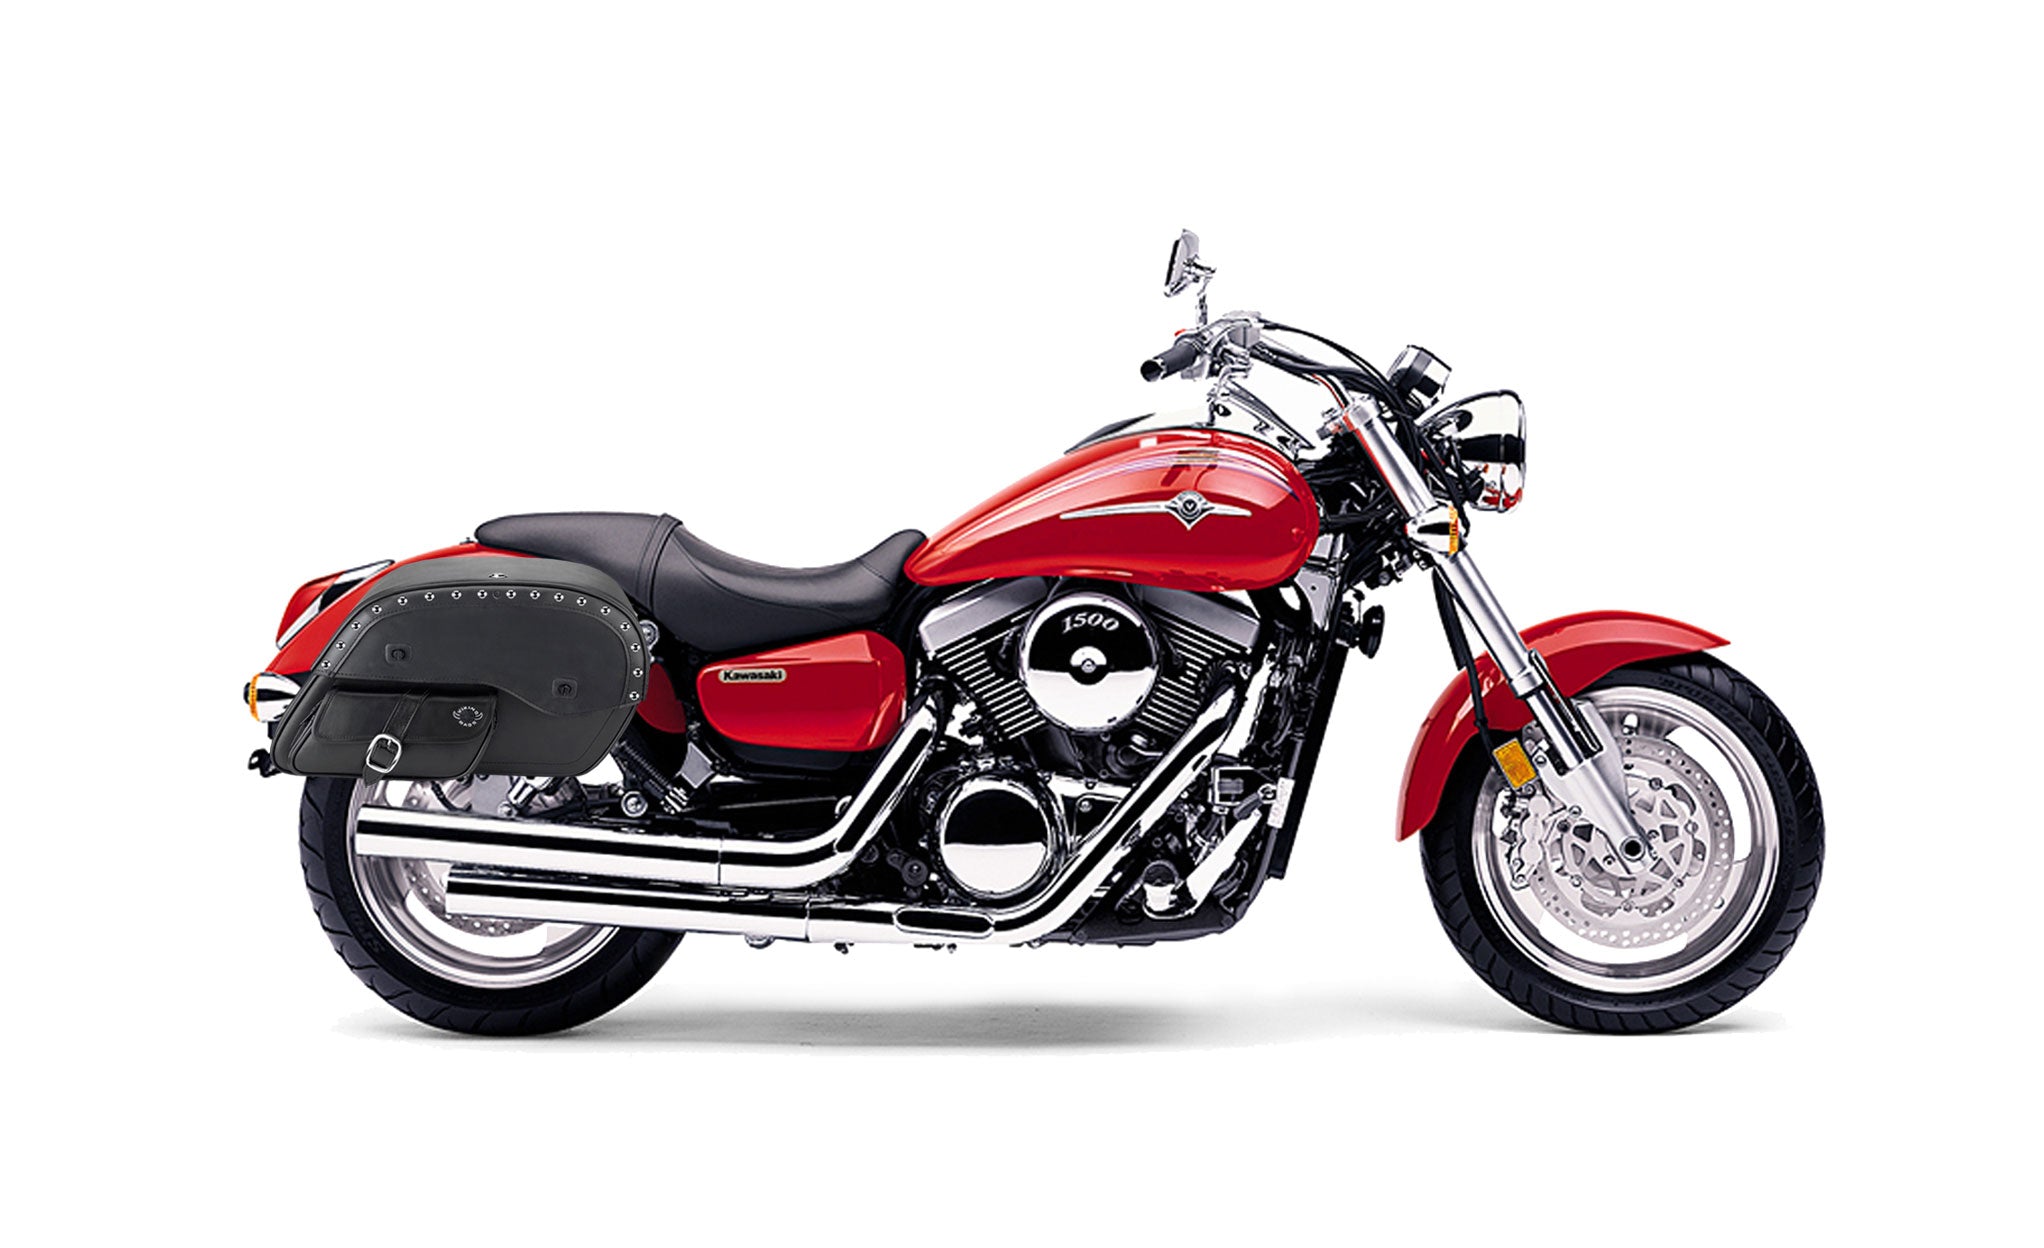 Viking Side Pocket Large Studded Kawasaki Mean Streak 1500 Leather Motorcycle Saddlebags on Bike Photo @expand